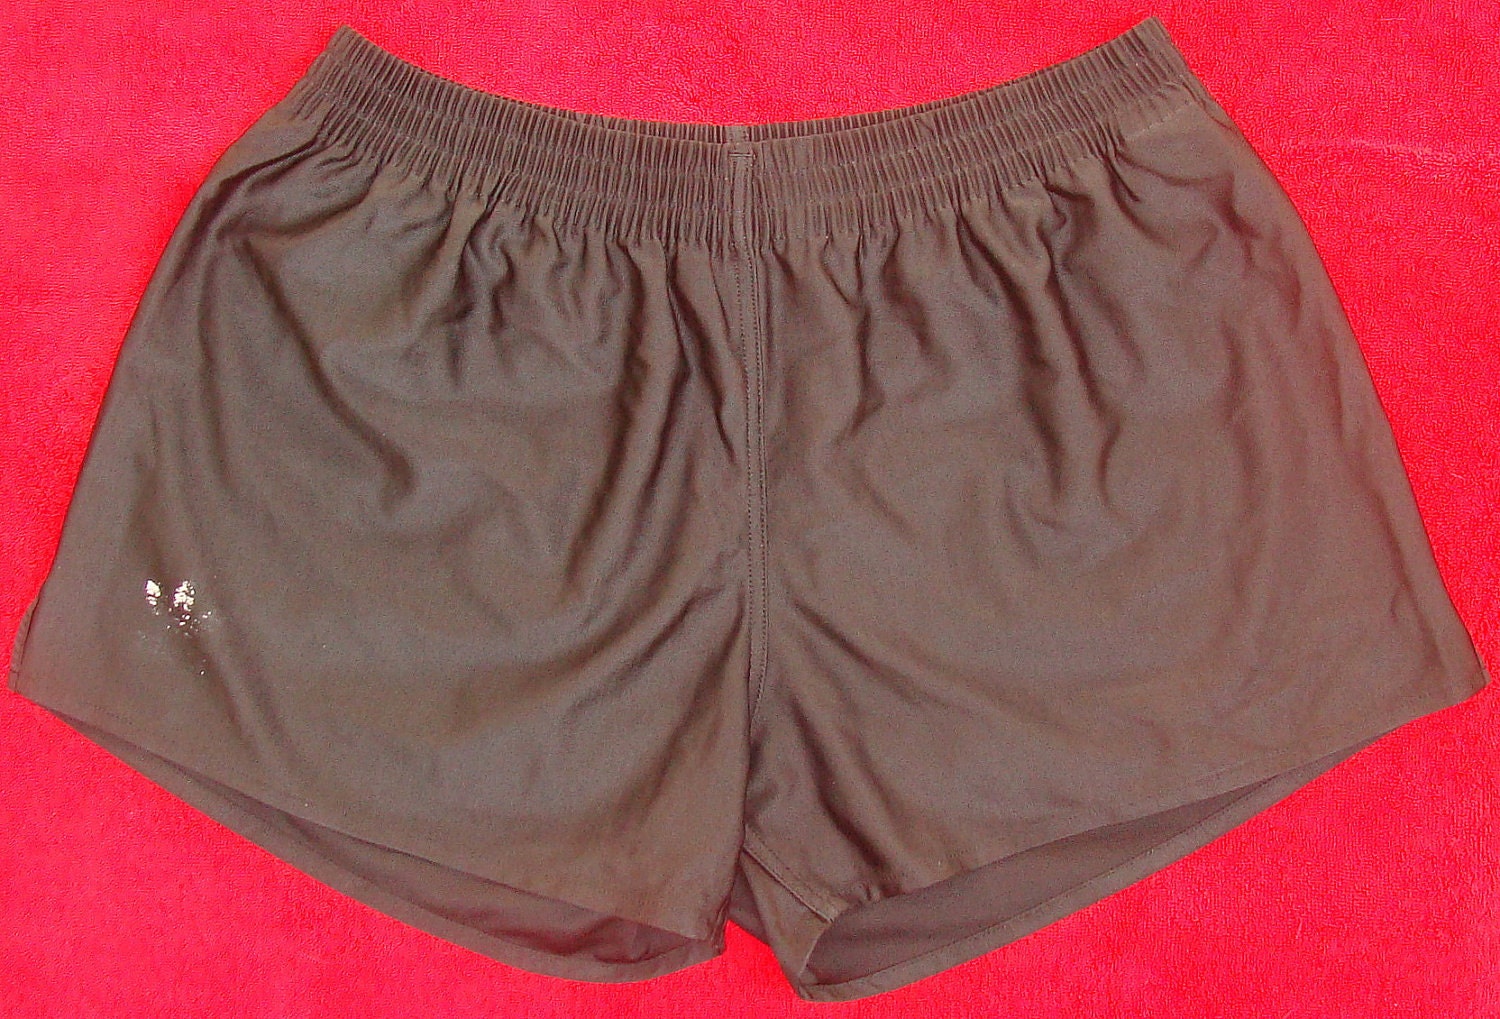 nylon running shorts